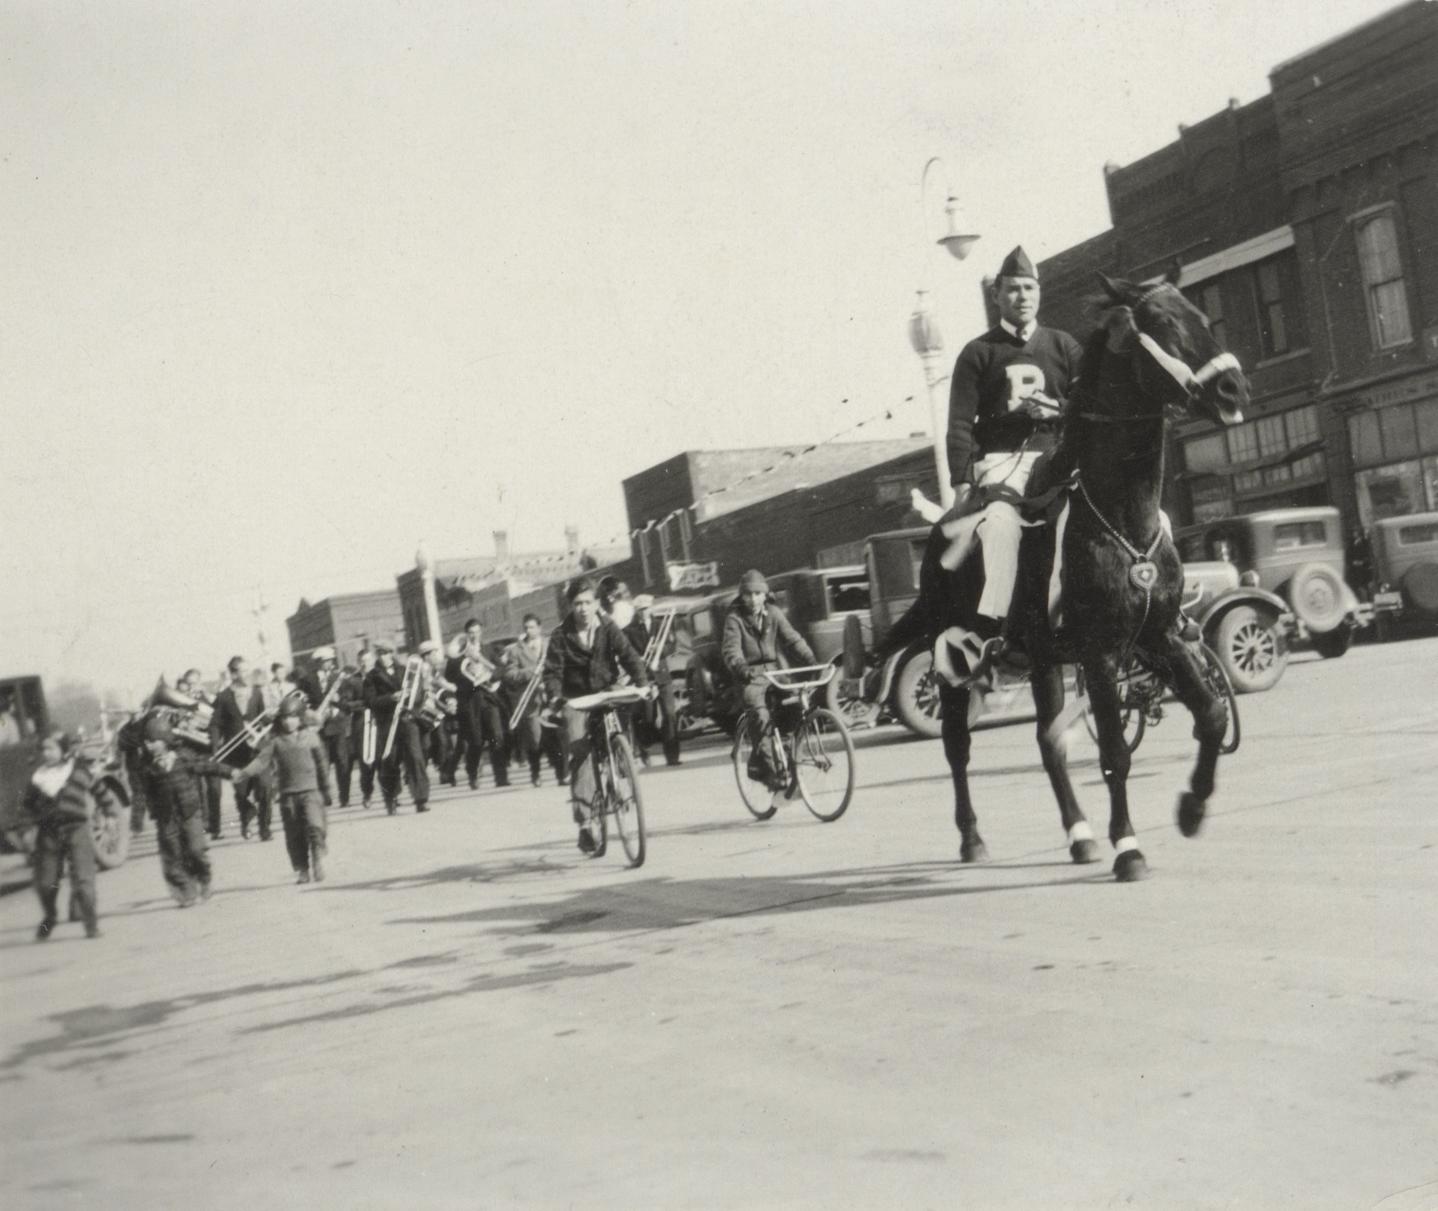 Homecoming parade, 1930